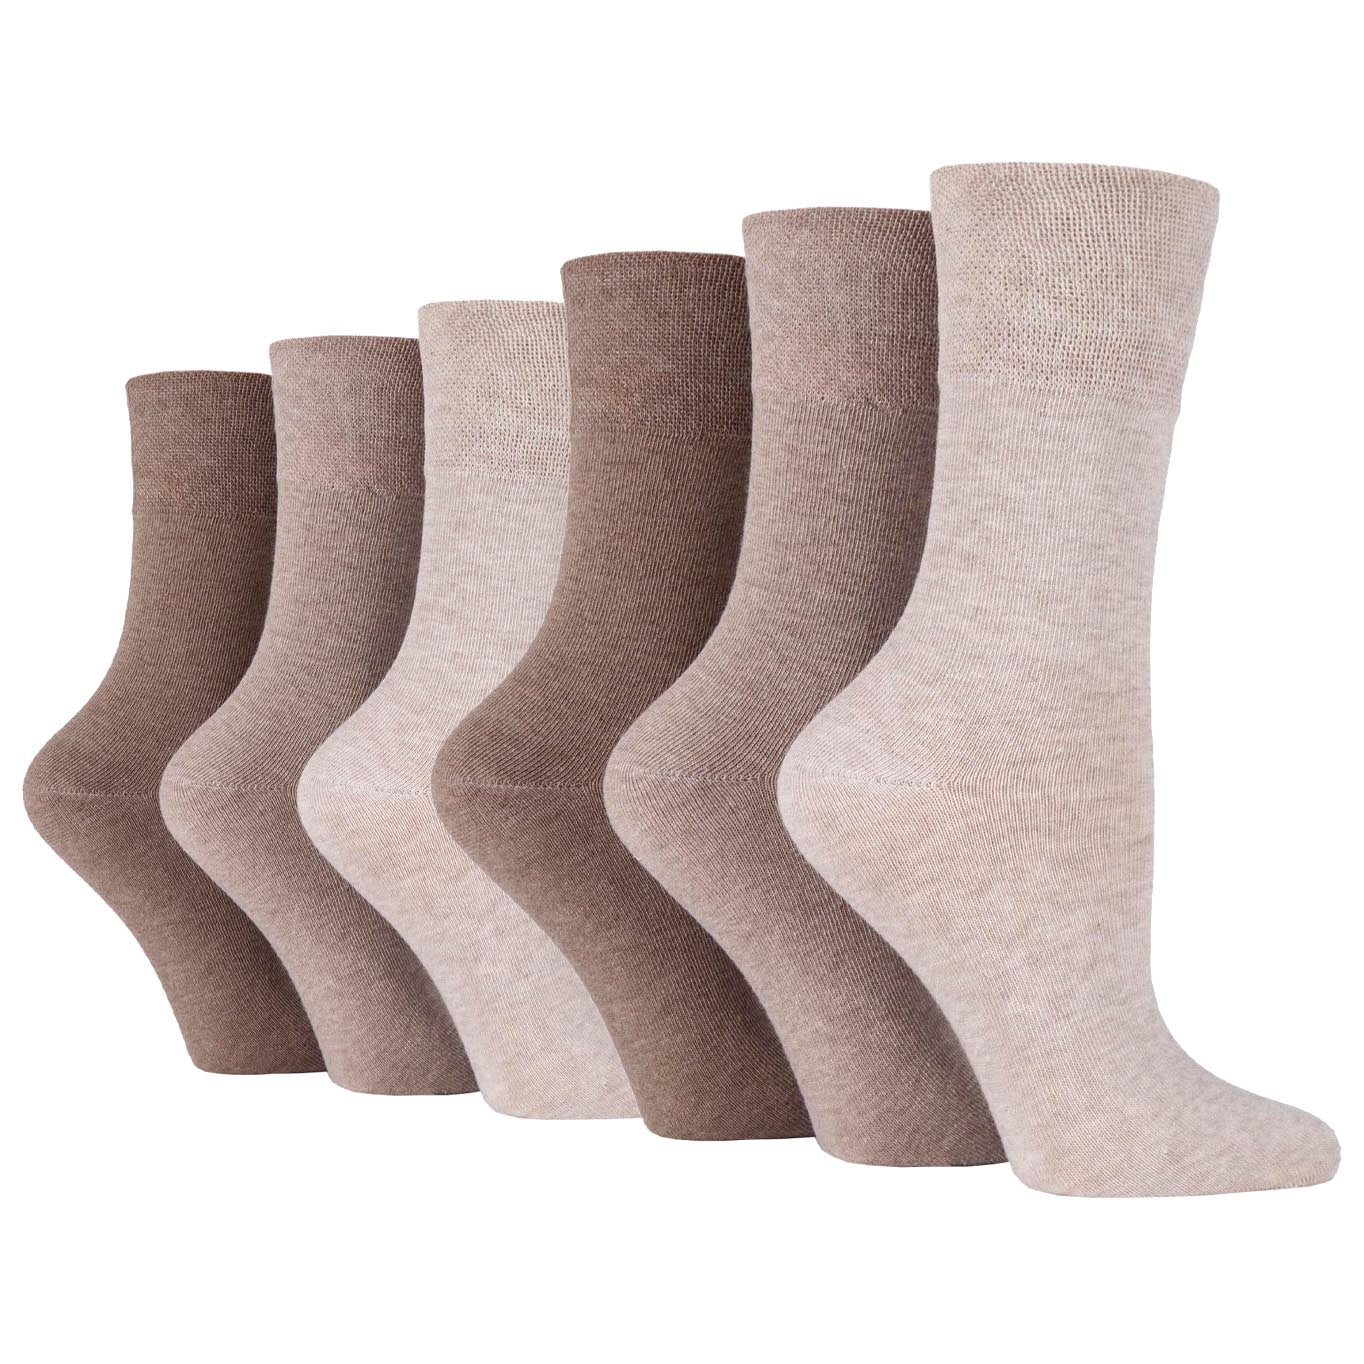 6 Pairs Ladies Gentle Grip Diabetic Socks Natural Plain